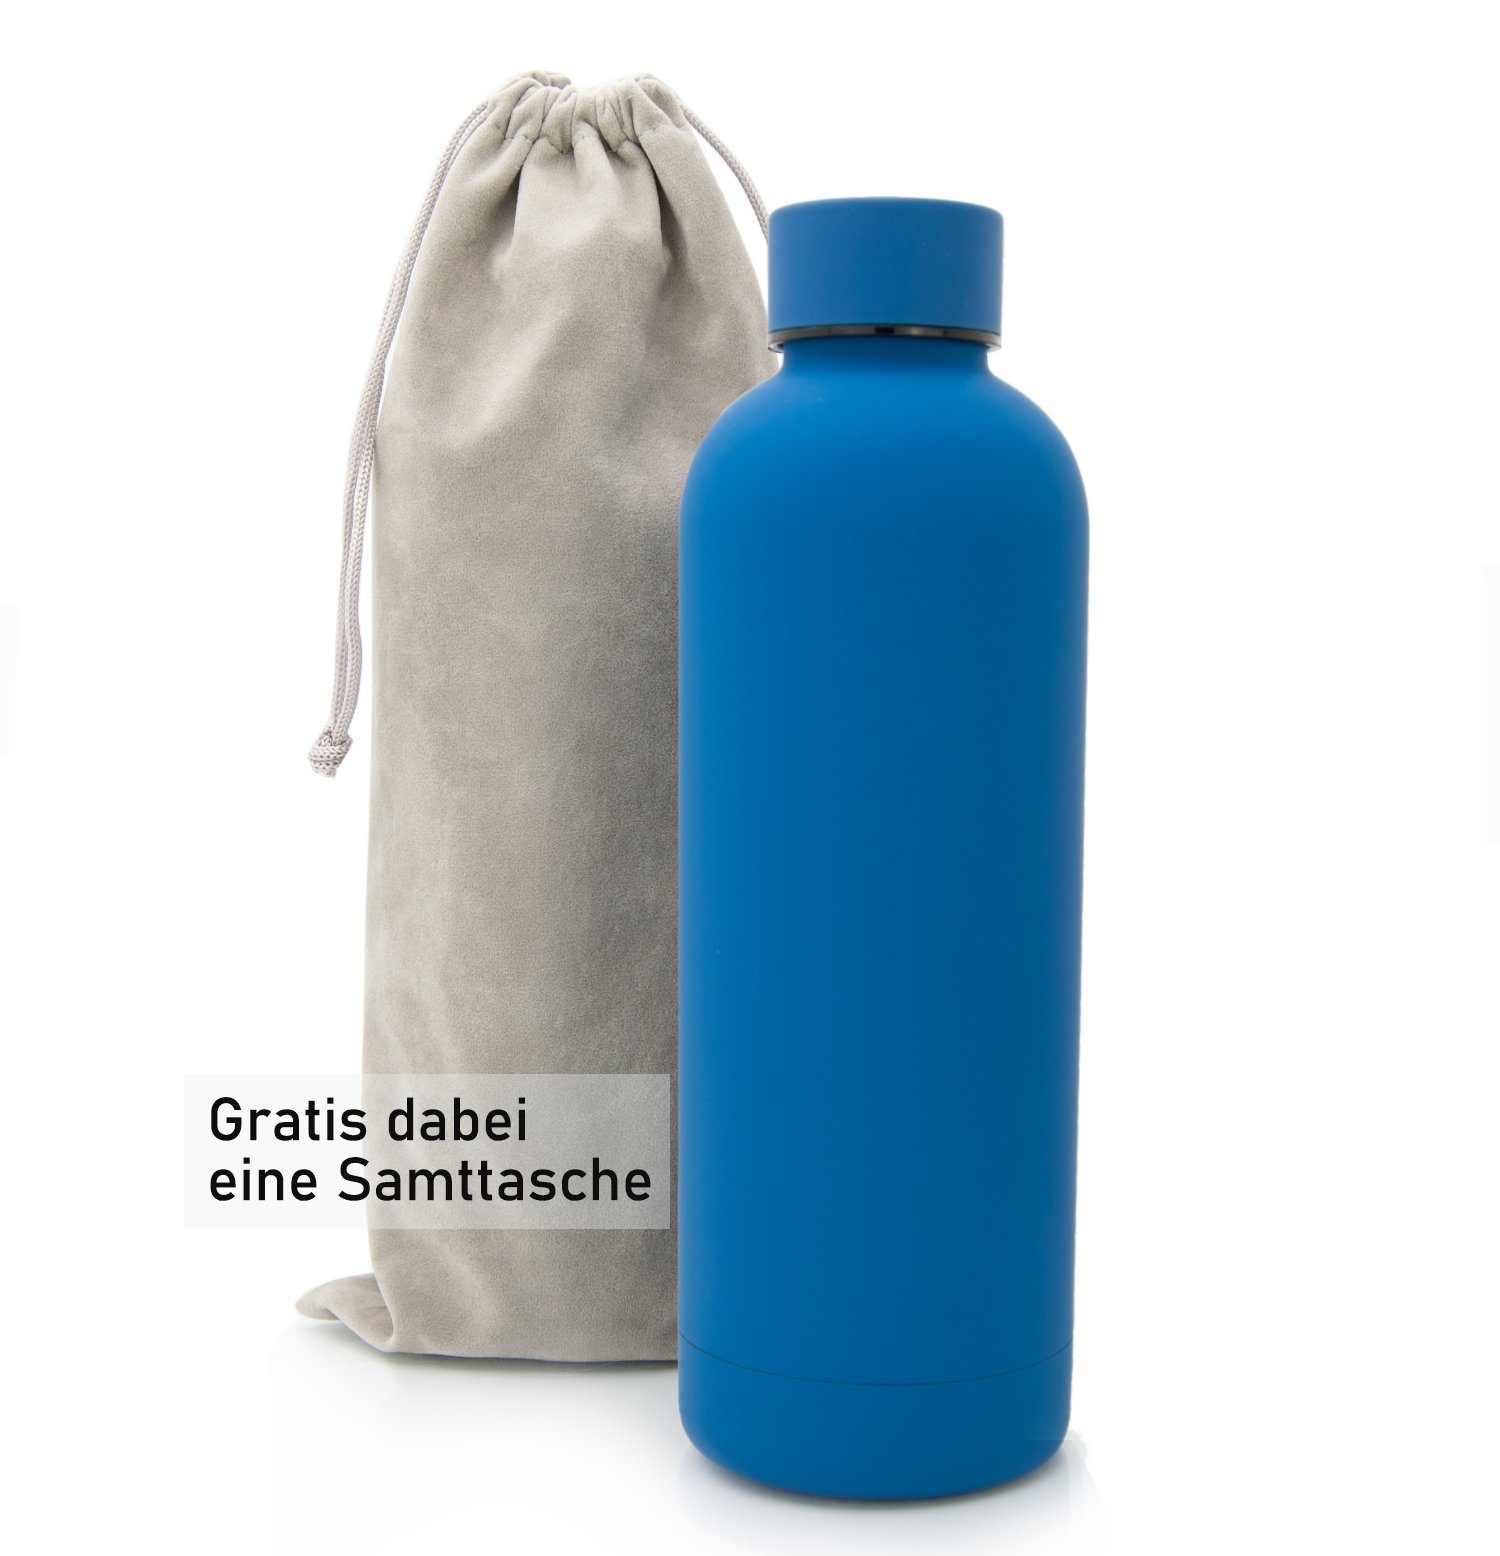 TRENDY AND NEW Isolierflasche HEISS Wasserflasche Samttasche Büro, Trinkflasche EFFECTIVE INSULATION 0,5l Blue Trinkflasche Tee Kohlensäure, für unterwegs, GRATIS Edelstahl auslaufsichere mit HIGH Classique TECHNOLOGY EISKALT, hält mit für für für für Kaffee, 14h T&N Thermosflasche Thermoskanne 500ml, Classique Sprudel-Wasser Flasche 29h &